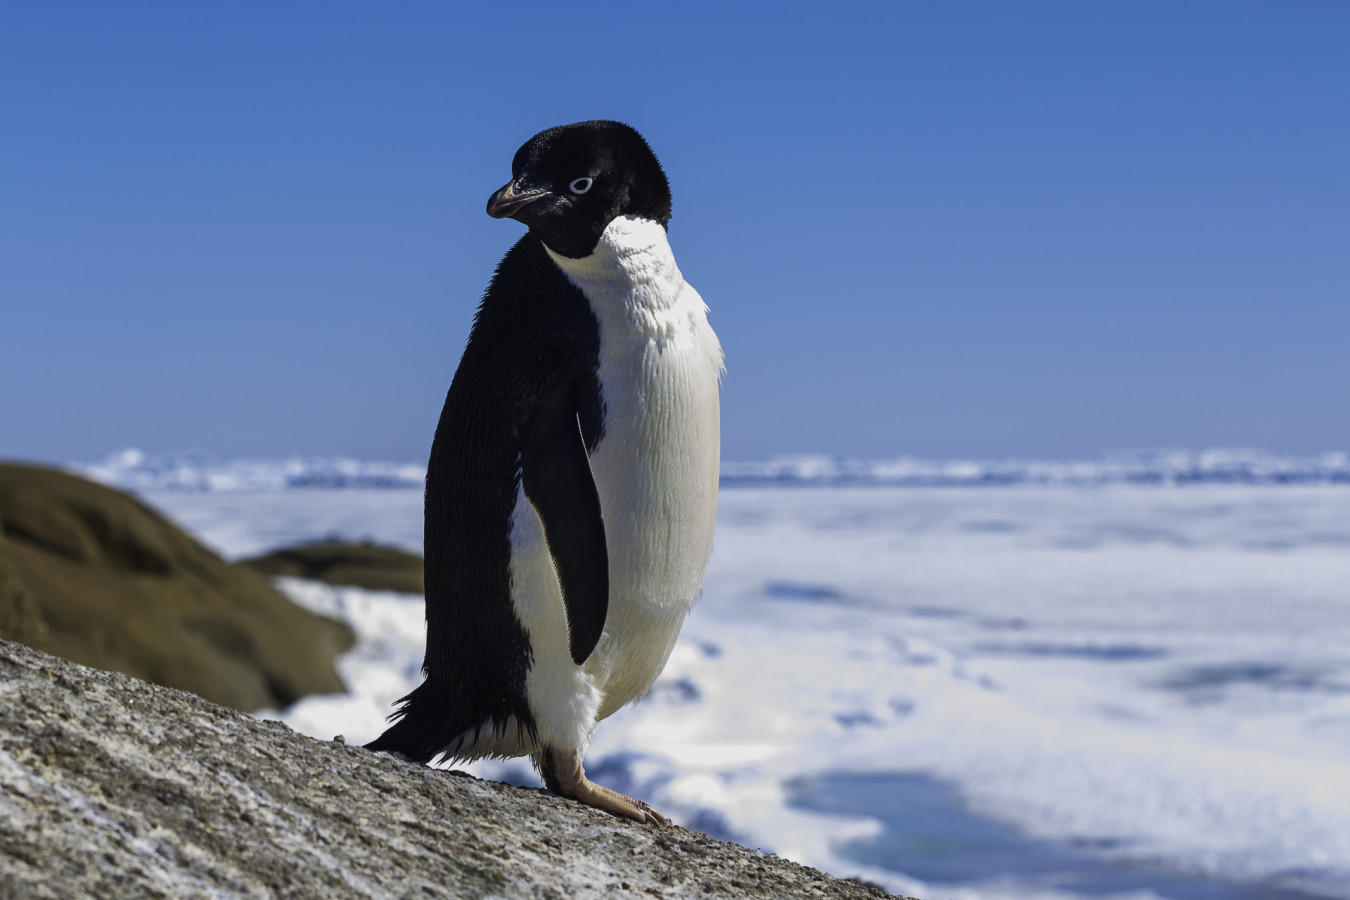 Пингвин - символ Антарктиды. Фото: Дмитрий Резвов, участник фотоконкурса РГО 